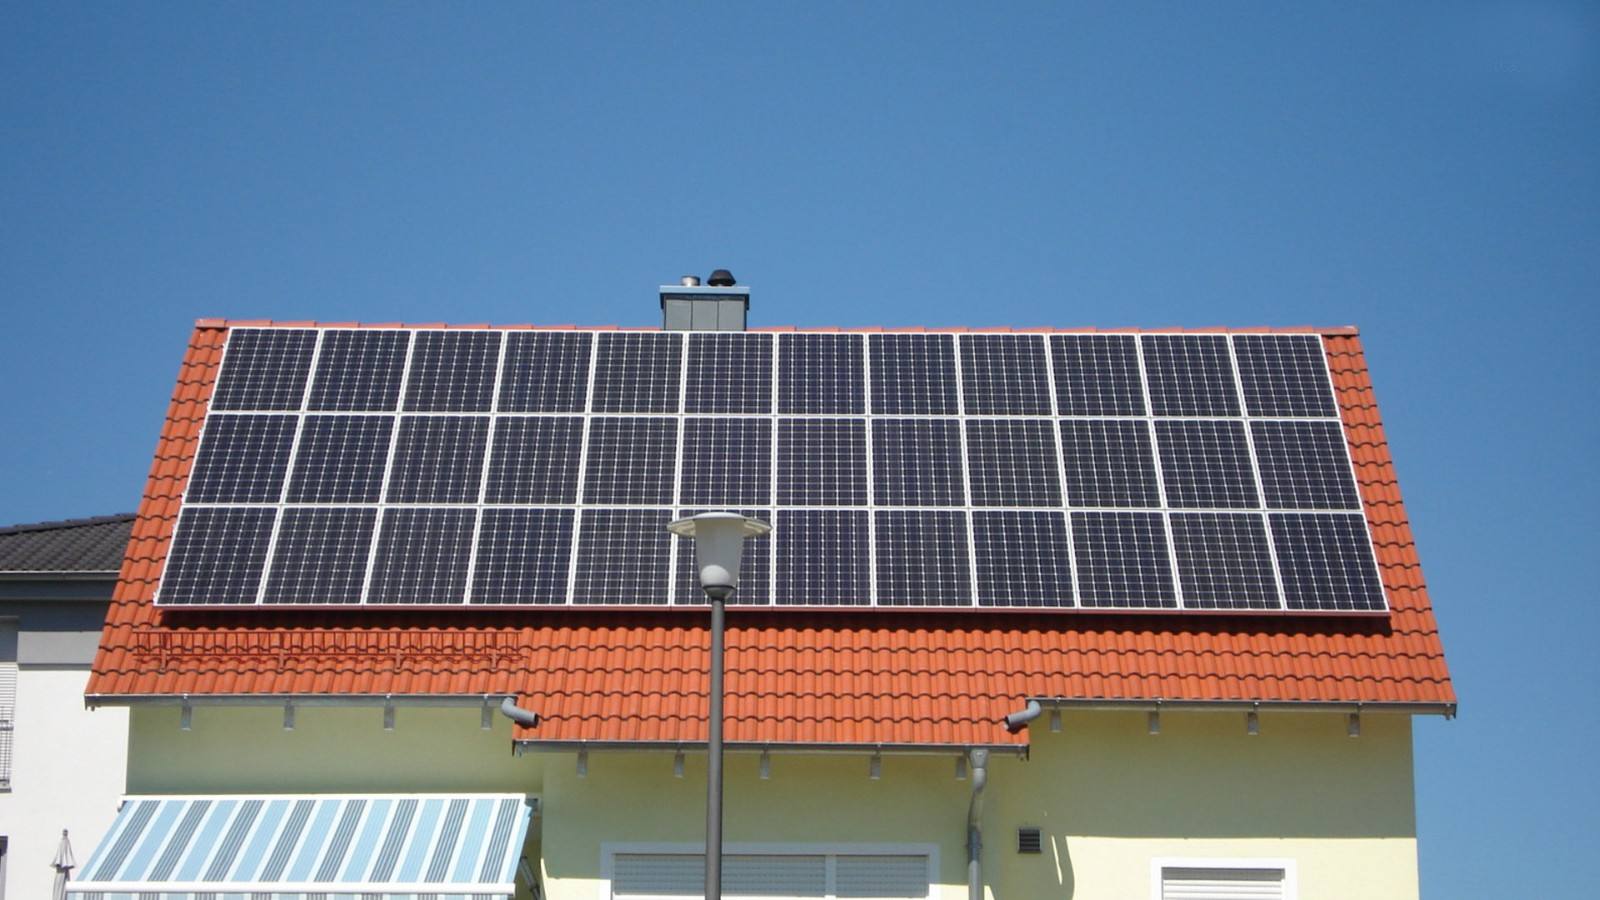 安阳光伏发电设备鹤壁太阳能发电光伏组件光伏发电南乐空气能取暖